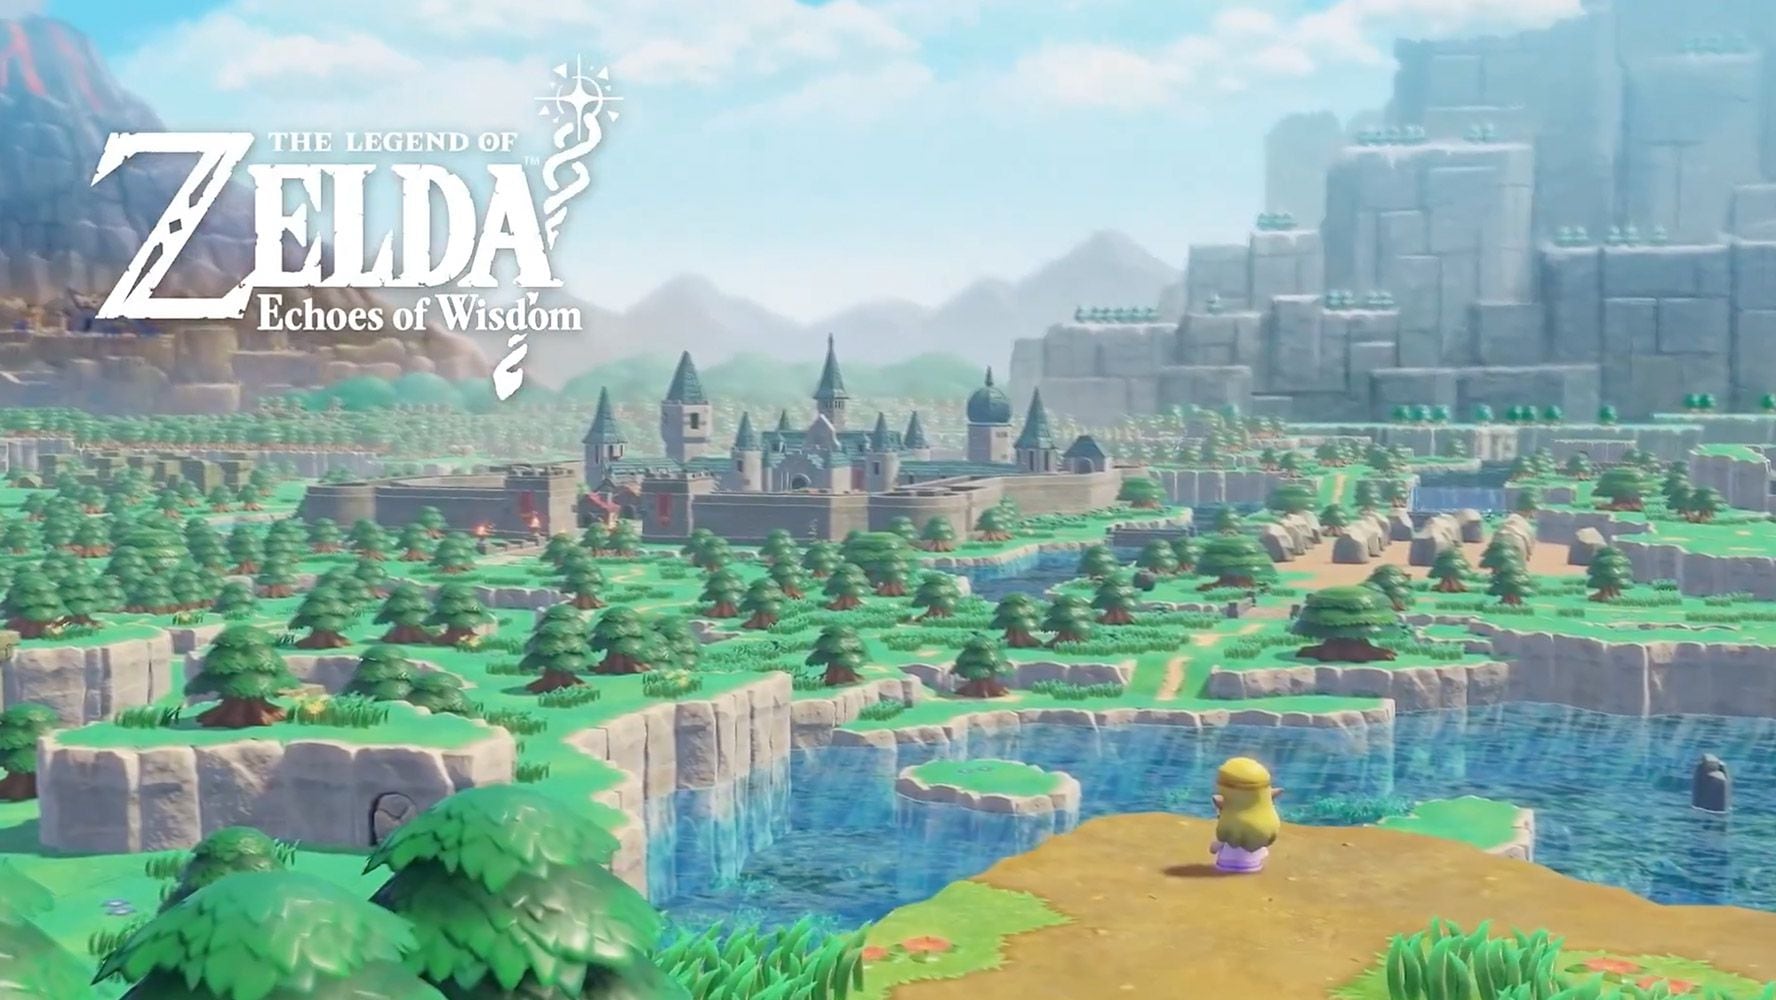 Imagen principal del nuevo juego The Legend of Zelda: Echoes of Wisdom.